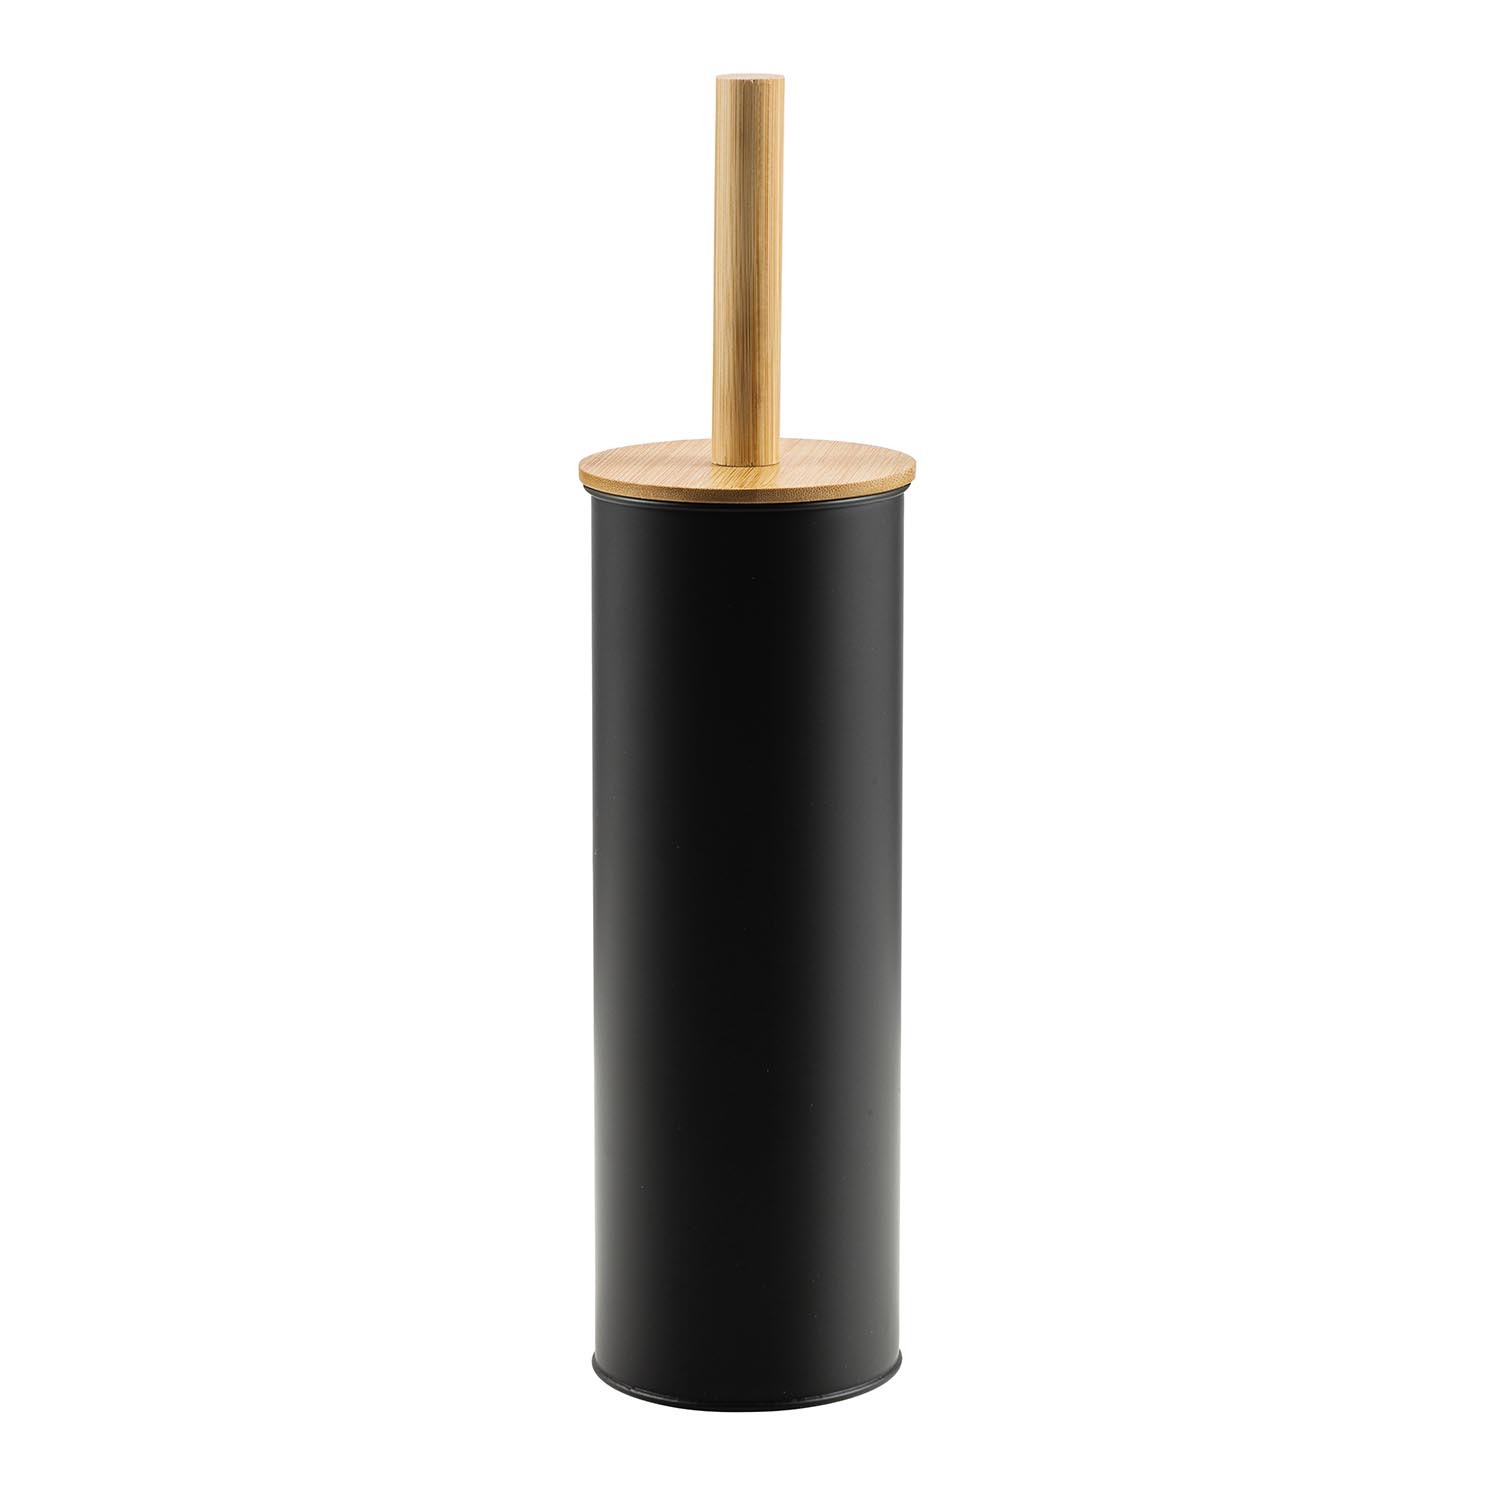 Bamboo Lid Toilet Brush Holder - Black Image